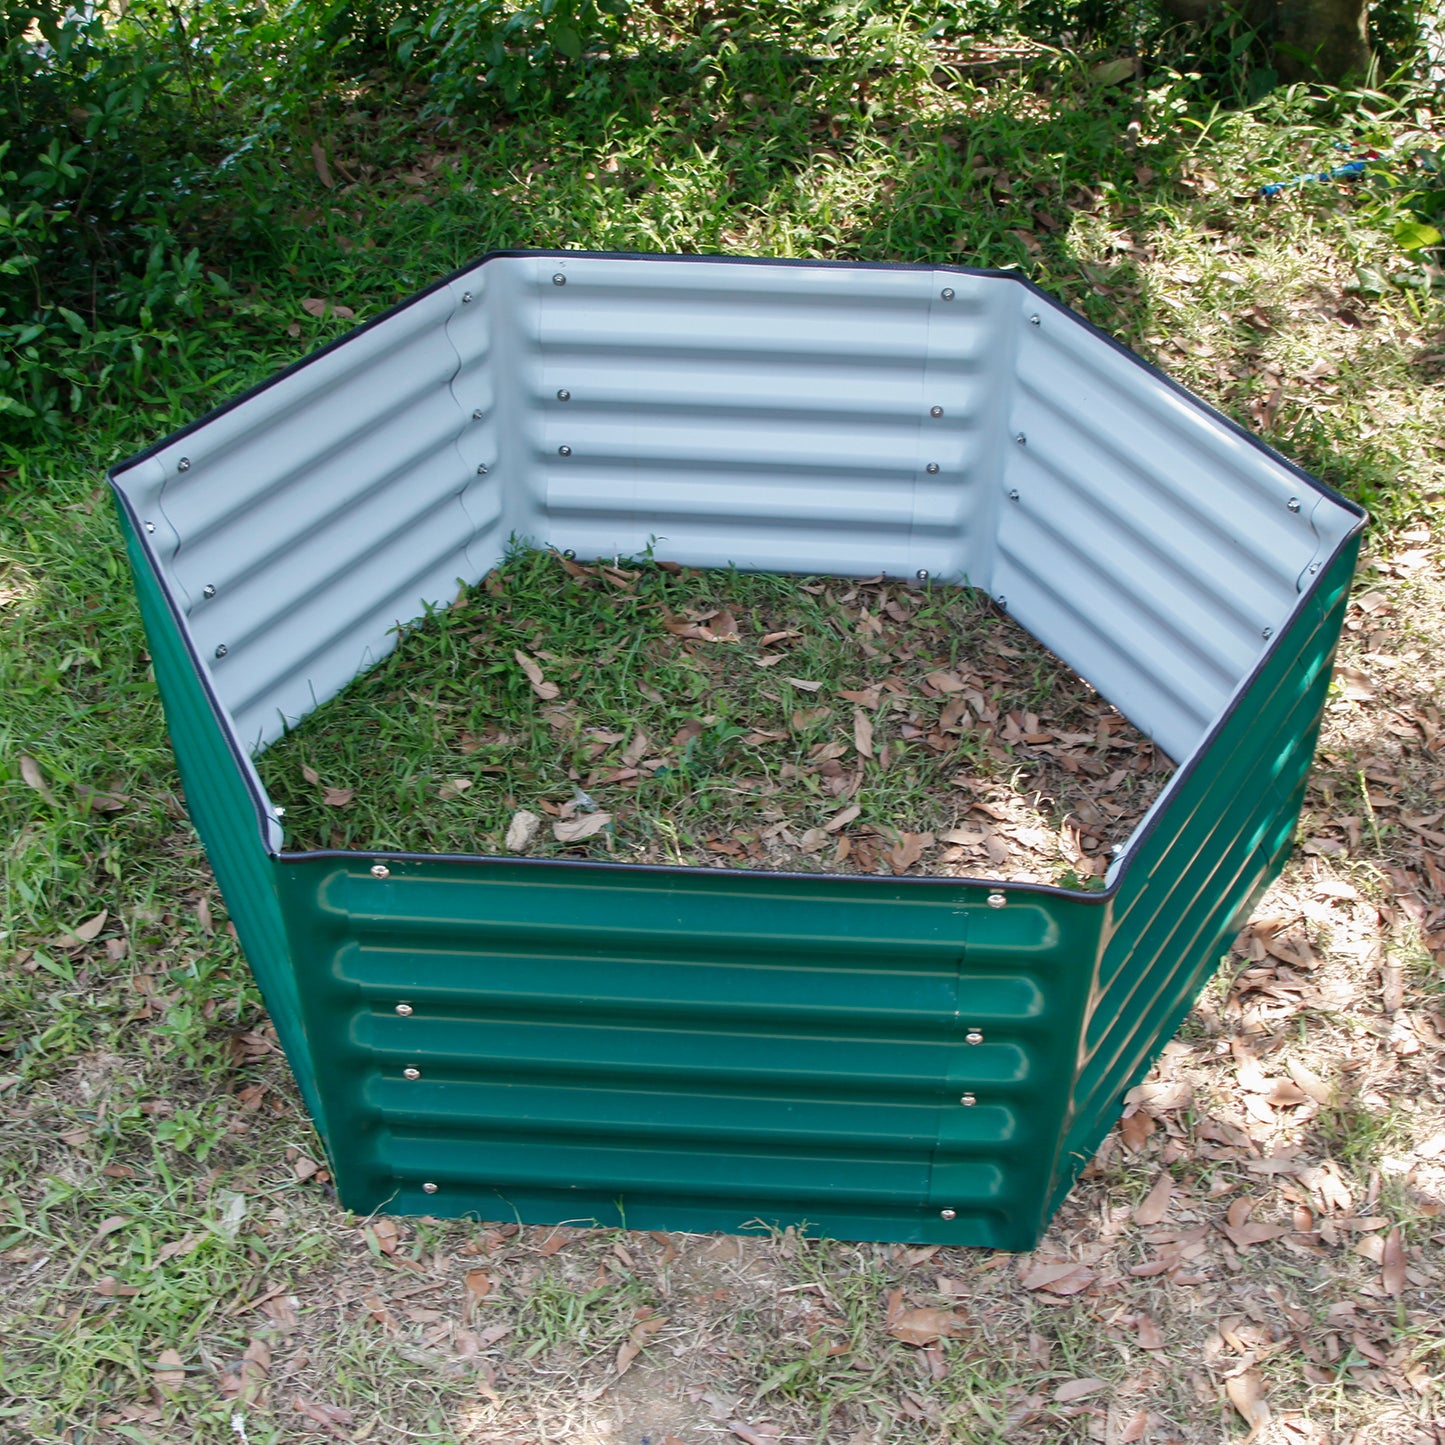 17 in. H 3.5'x4' Hexagon Metal Garden Beds